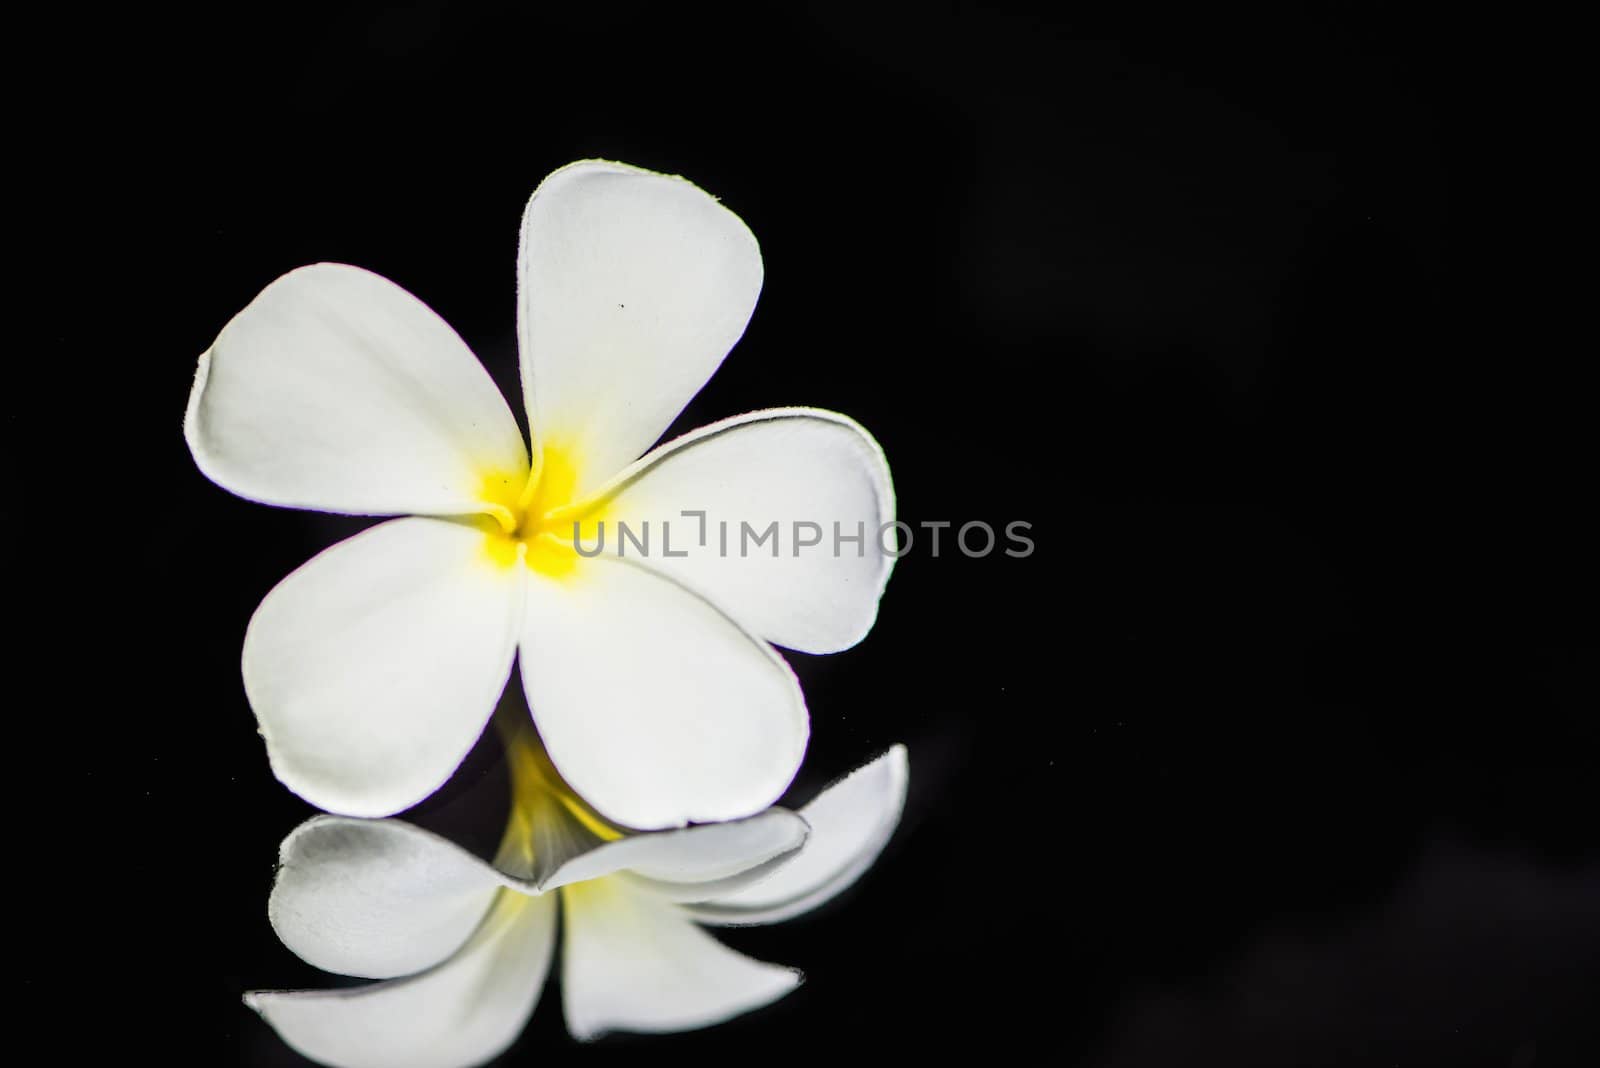 Frangipani flower by wmitrmatr